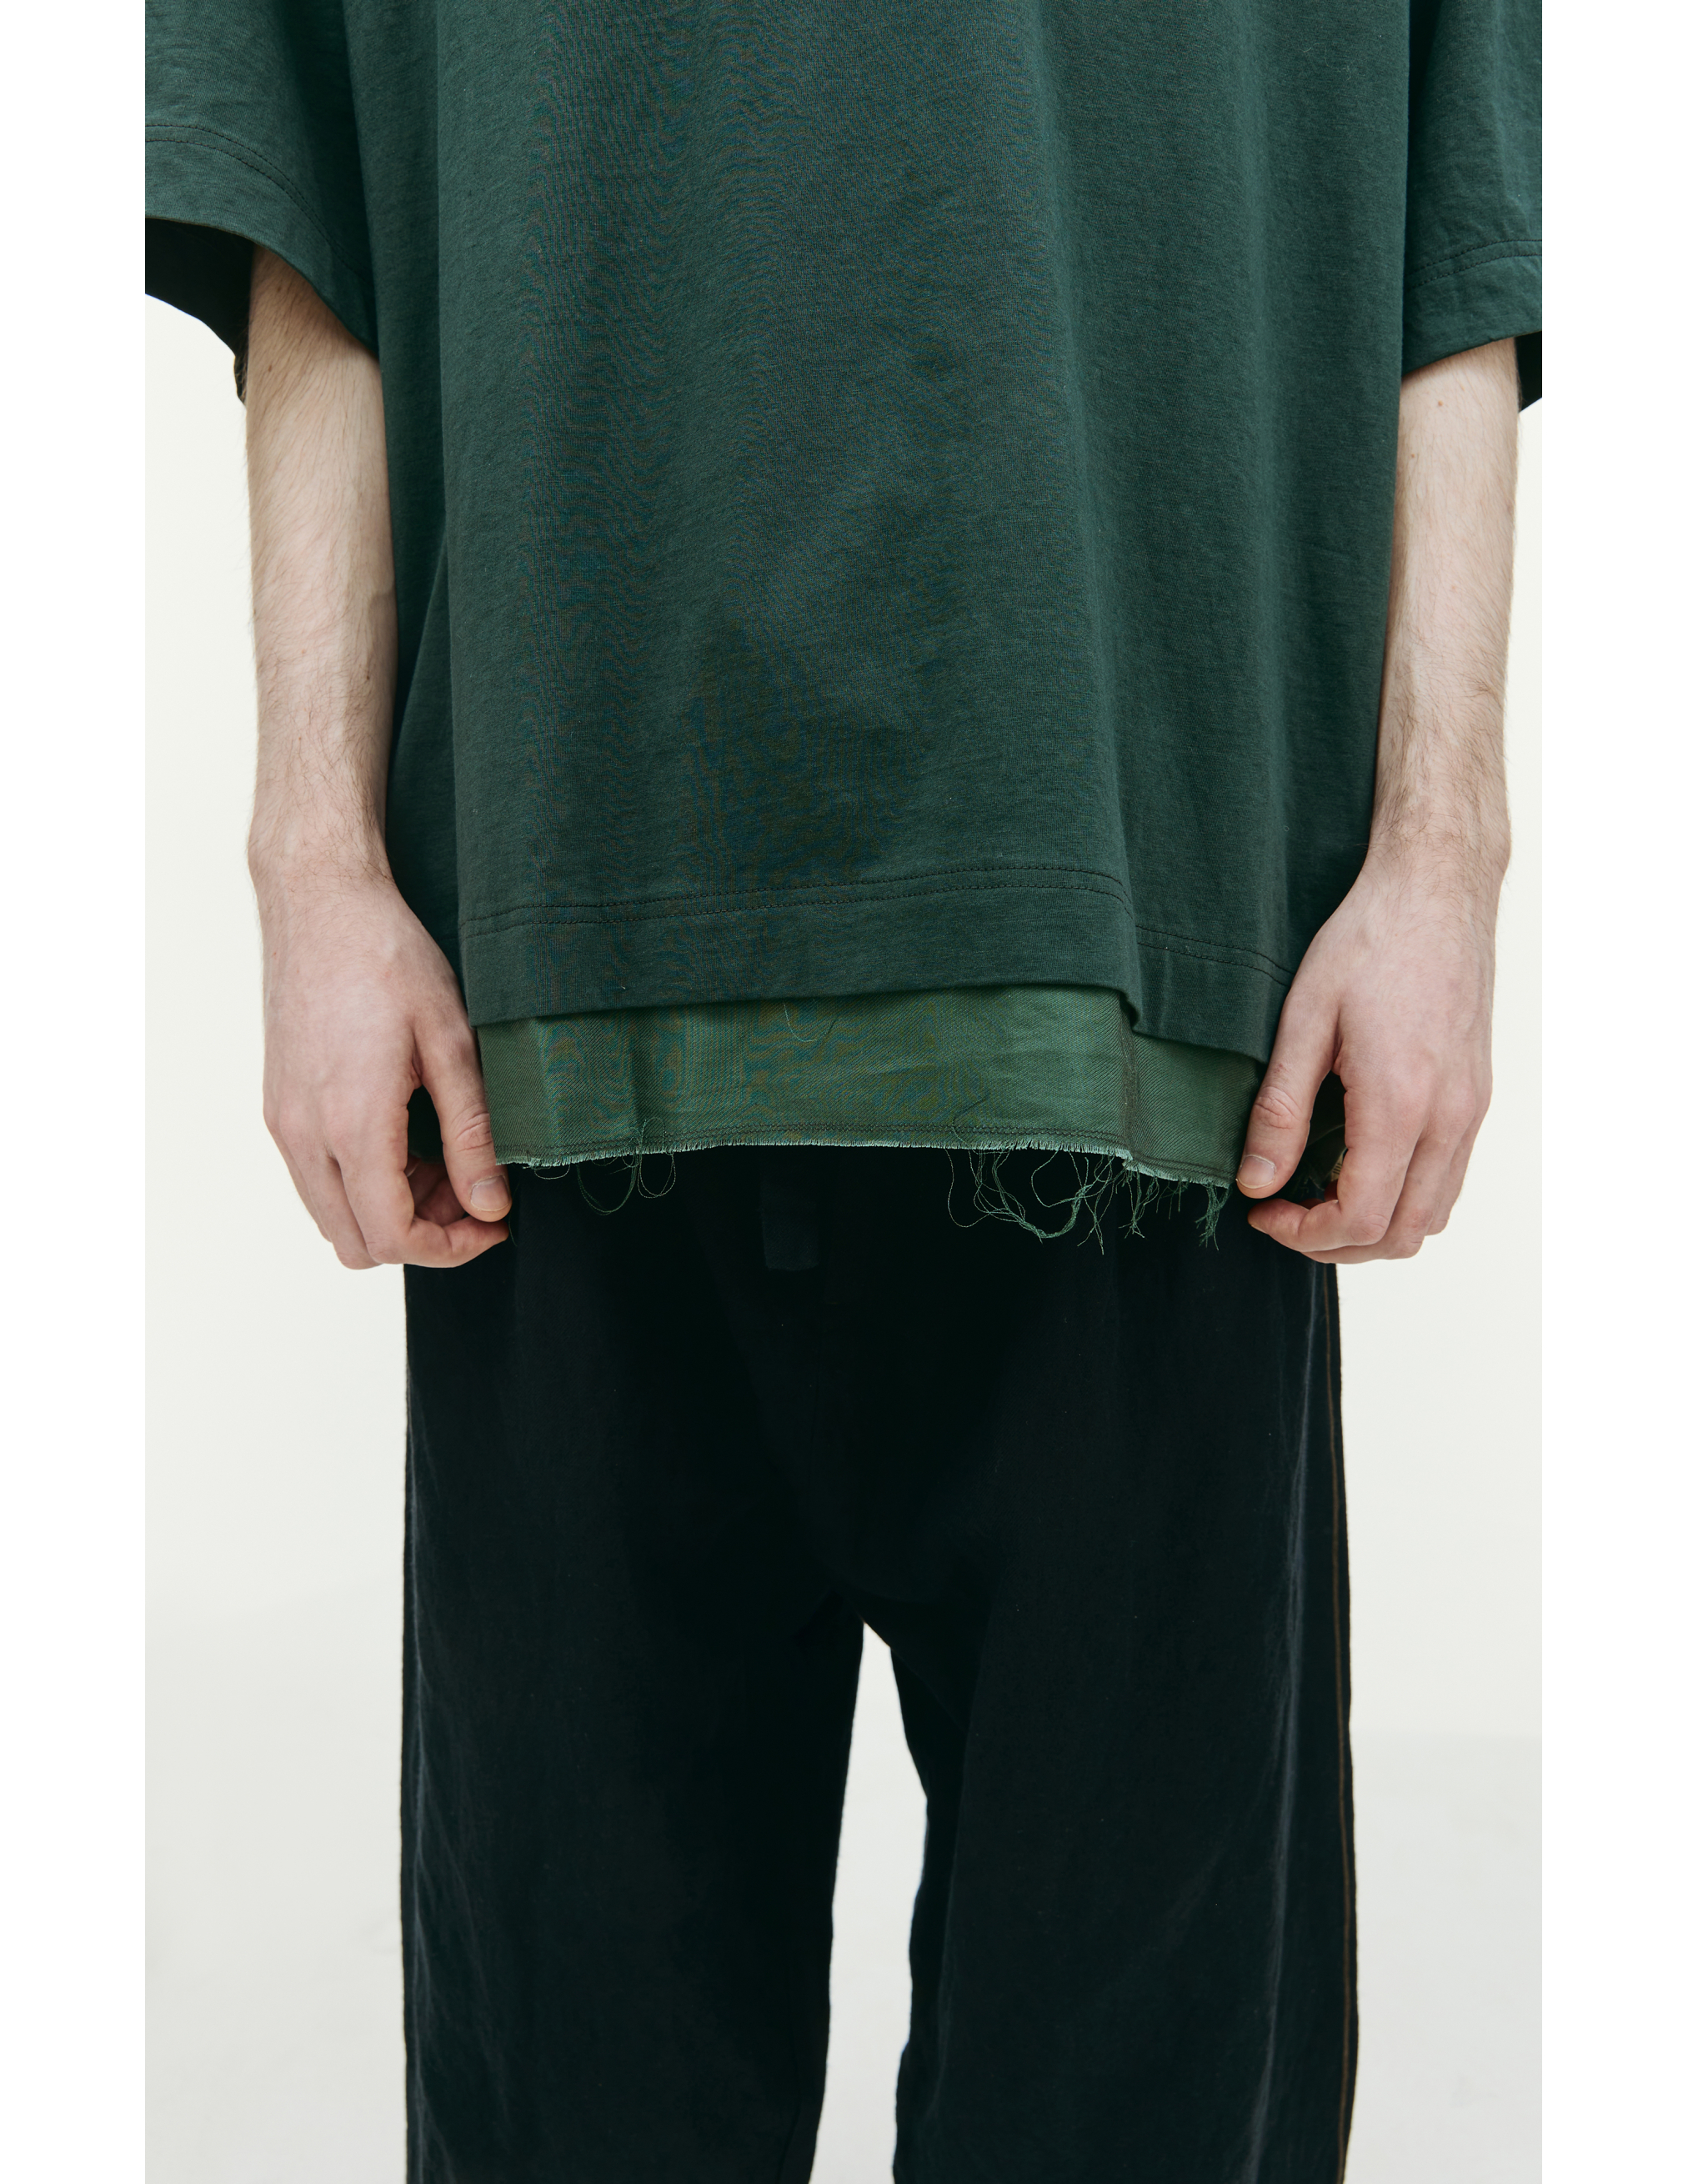 Комбинированная футболка с воротником-поло Ziggy Chen 0M2310211, размер 48;50;52 - фото 5